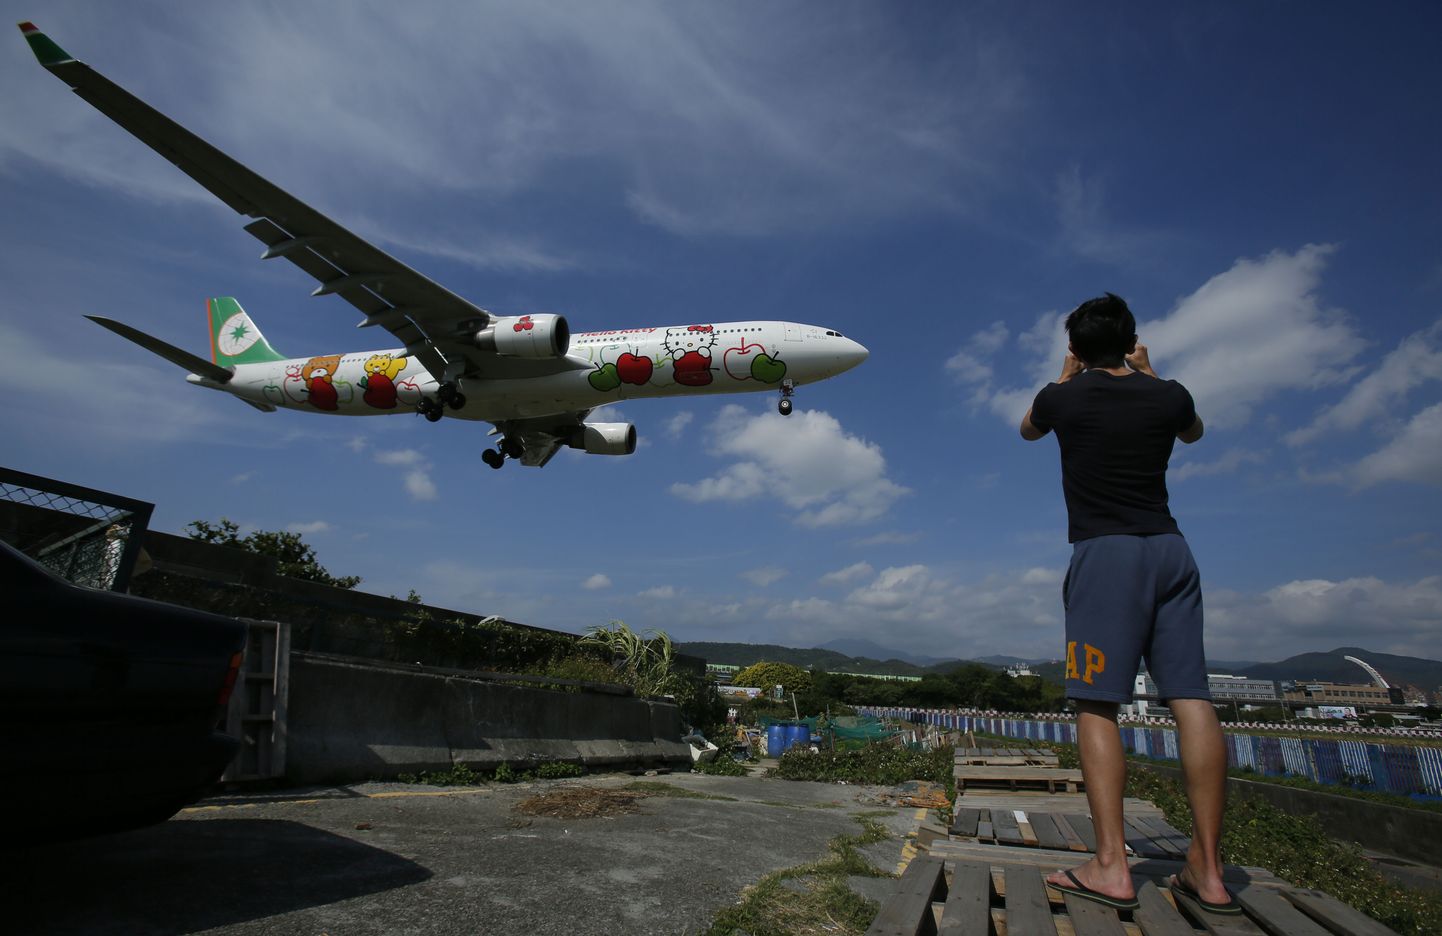 Taiwani lennufirma EVA Air korraldas lennu eikuhugi oma kuulsa Hello Kitty piltidega lennukiga.